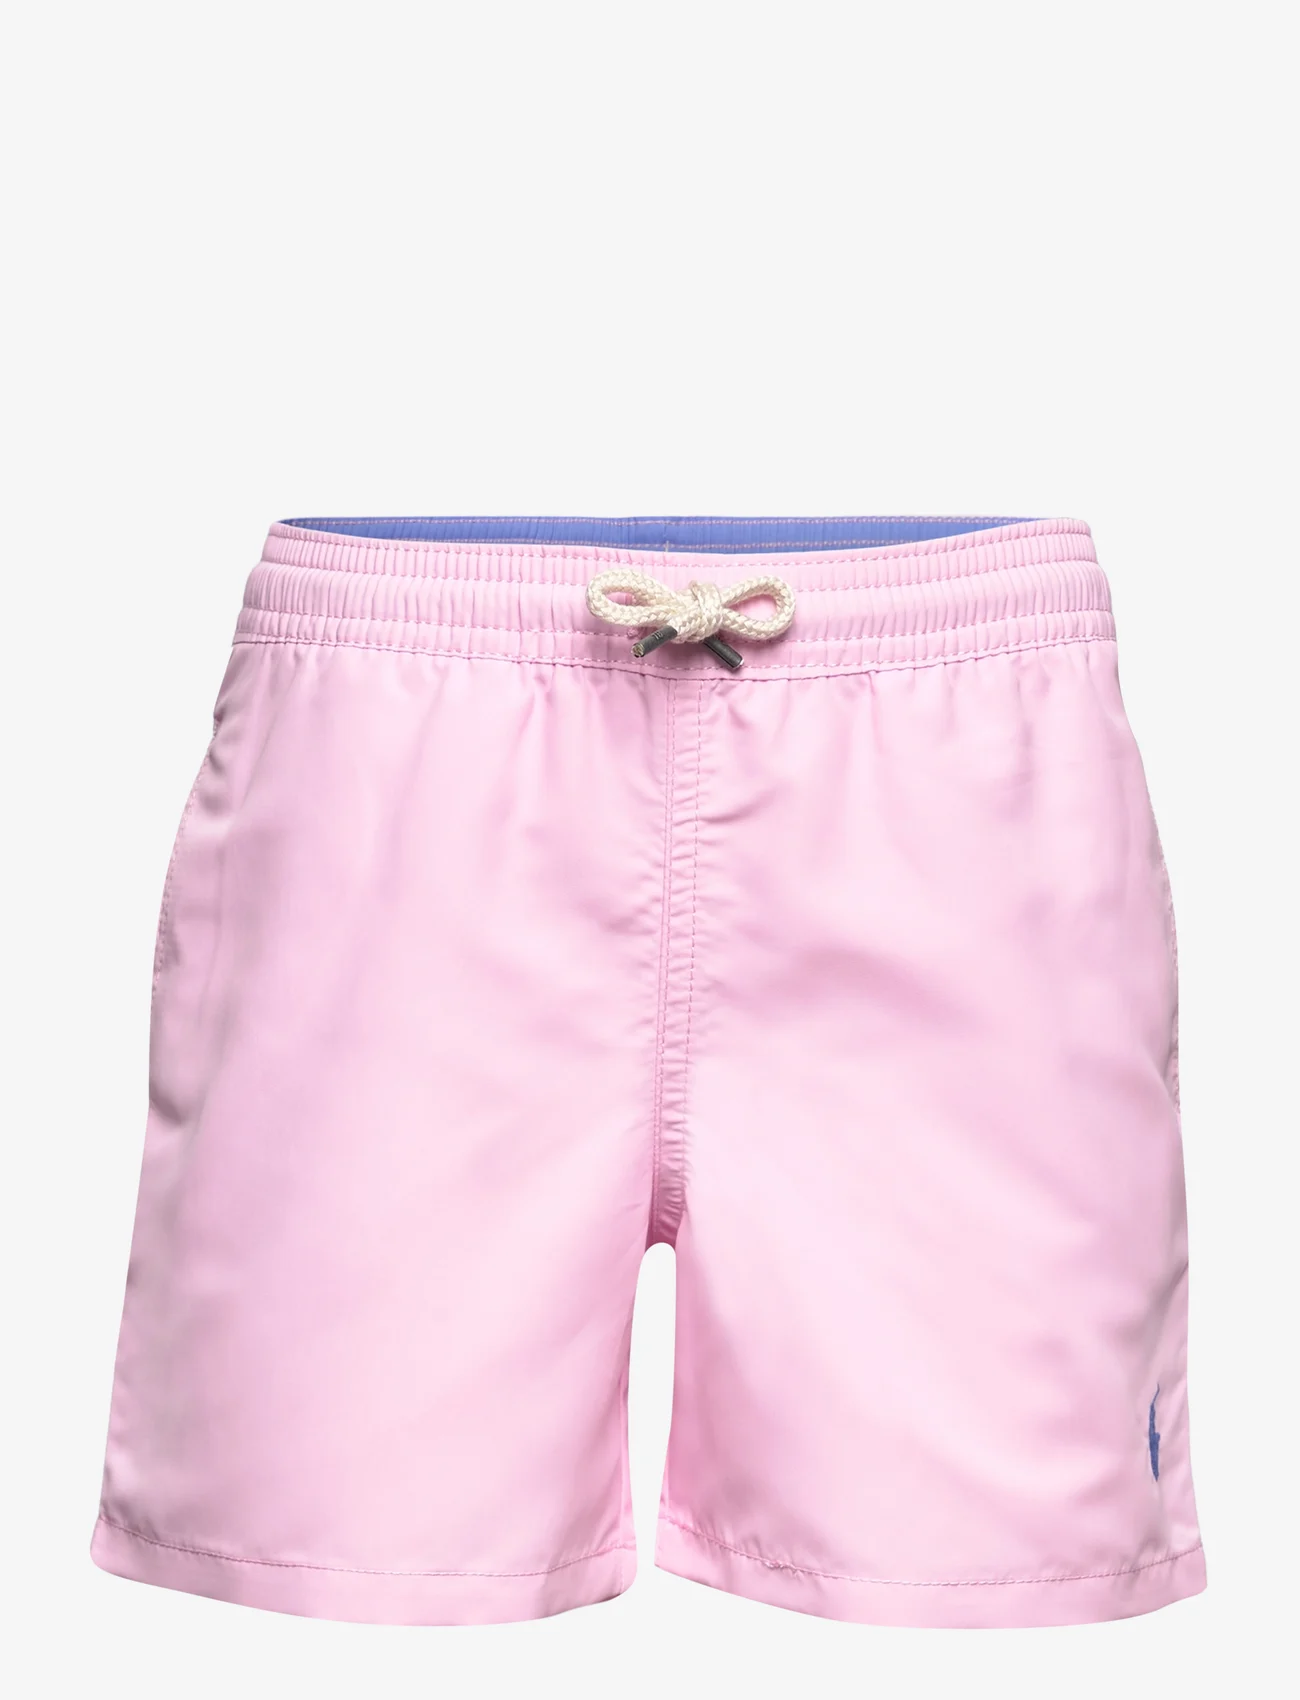 Ralph Lauren Kids - Traveler Swim Trunk - vasaros pasiūlymai - carmel pink - 0